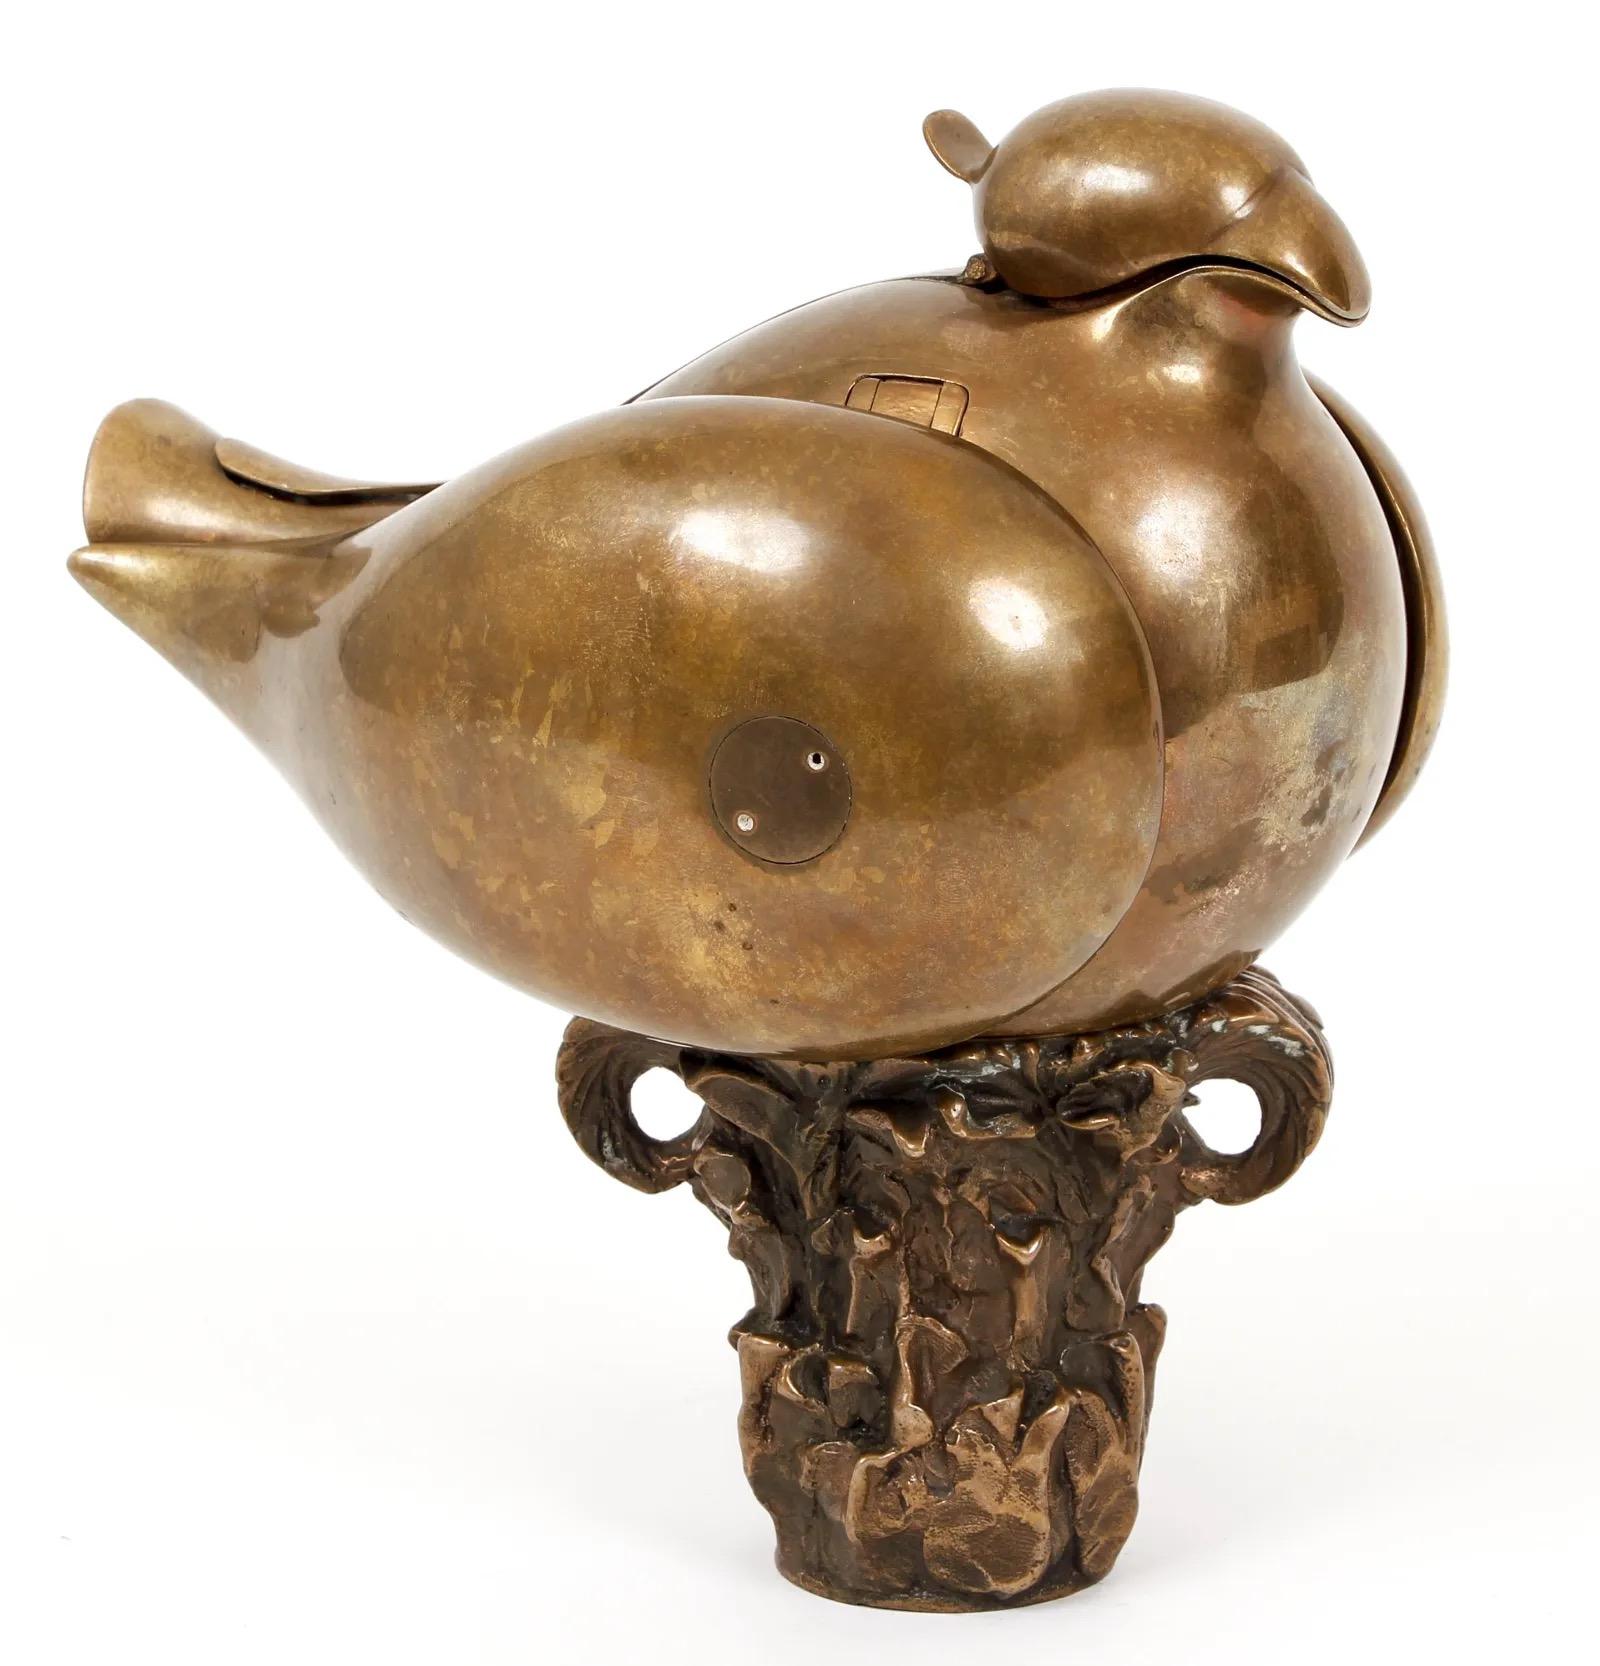 Teekanne Paloma jet (Taube) von Miguel Berrocal (Spanier, 1933-2006) aus dem Jahr 1976. Das Stück ist aus Bronze mit originalem Messingsockel und geätzter Künstlersignatur am Schwanz, voll ausziehbar.
       